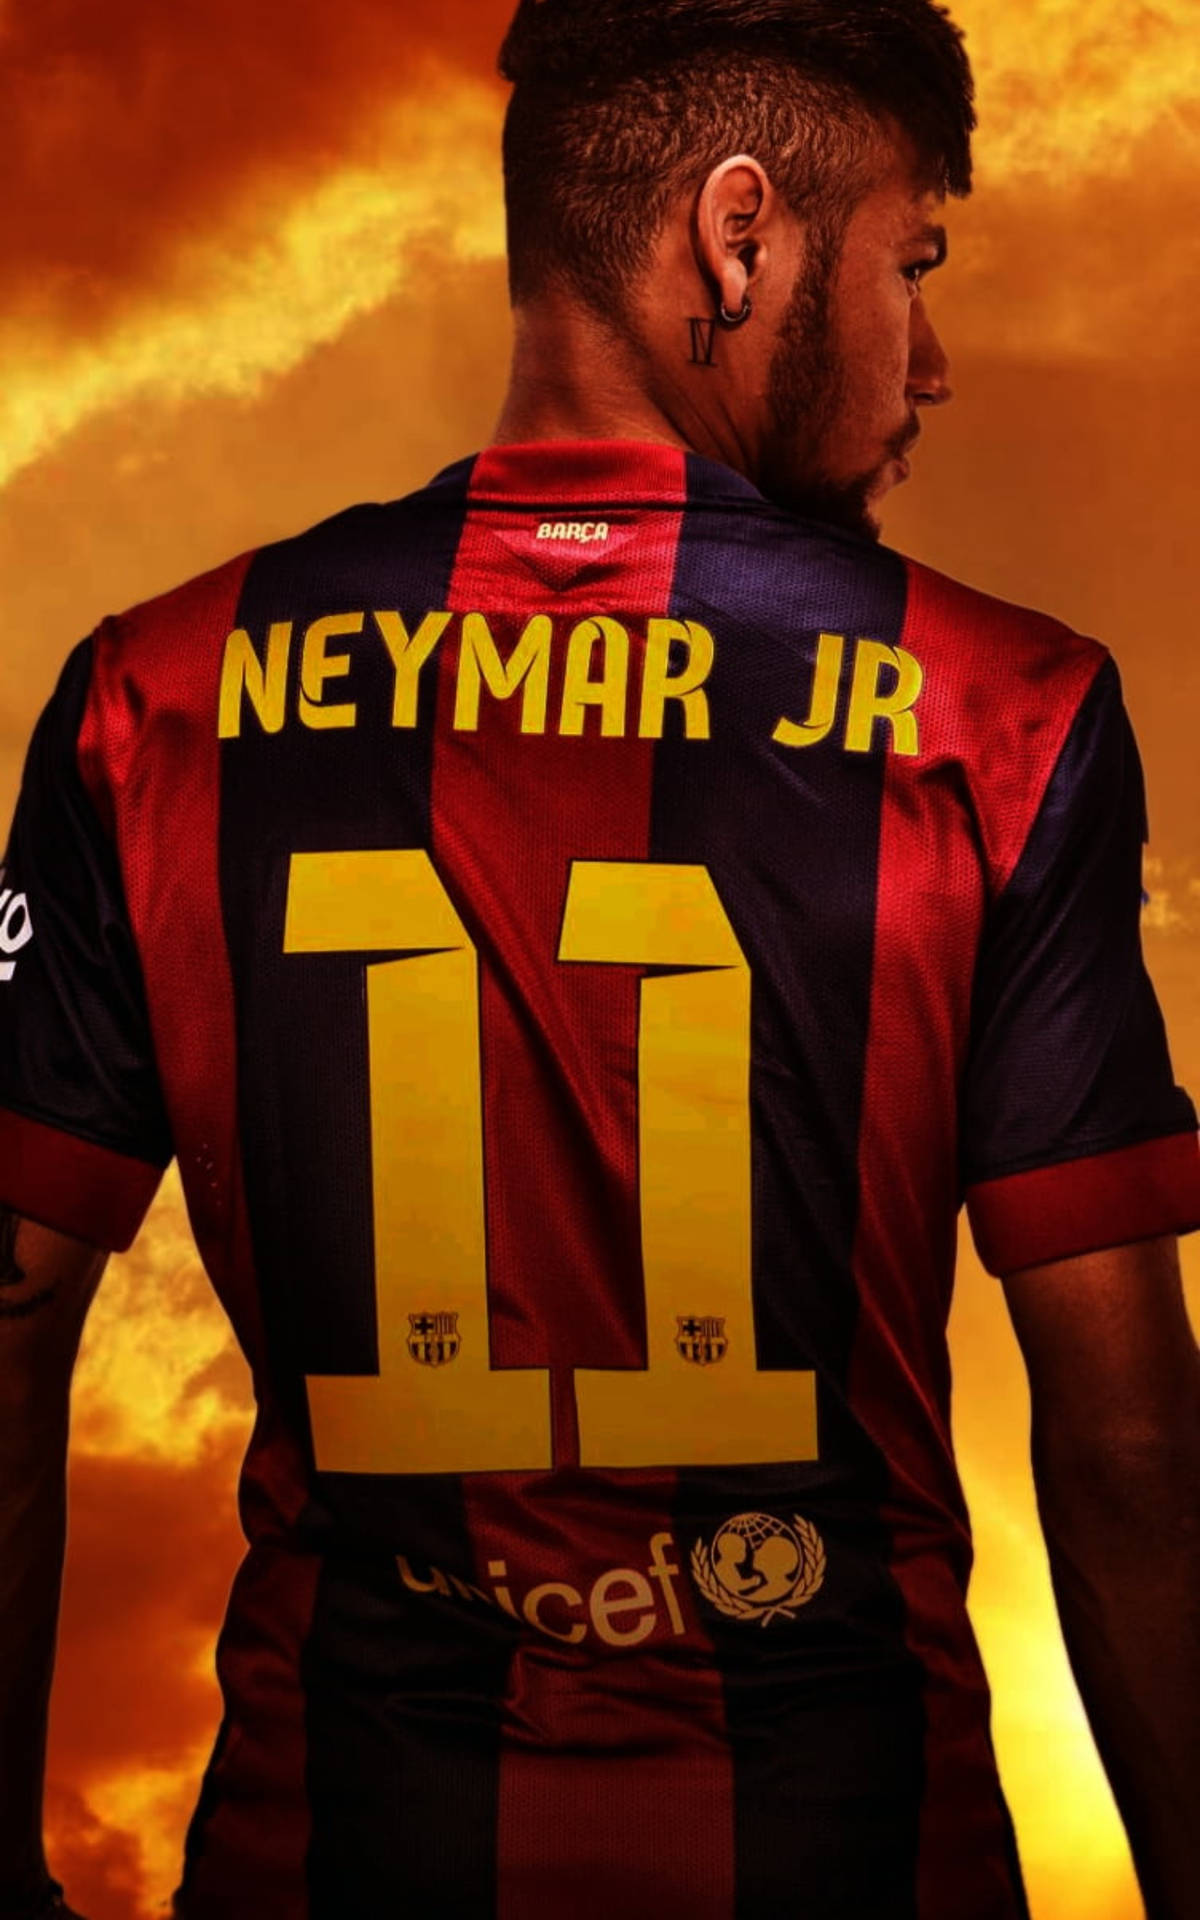 Neymar Jr In Number 11